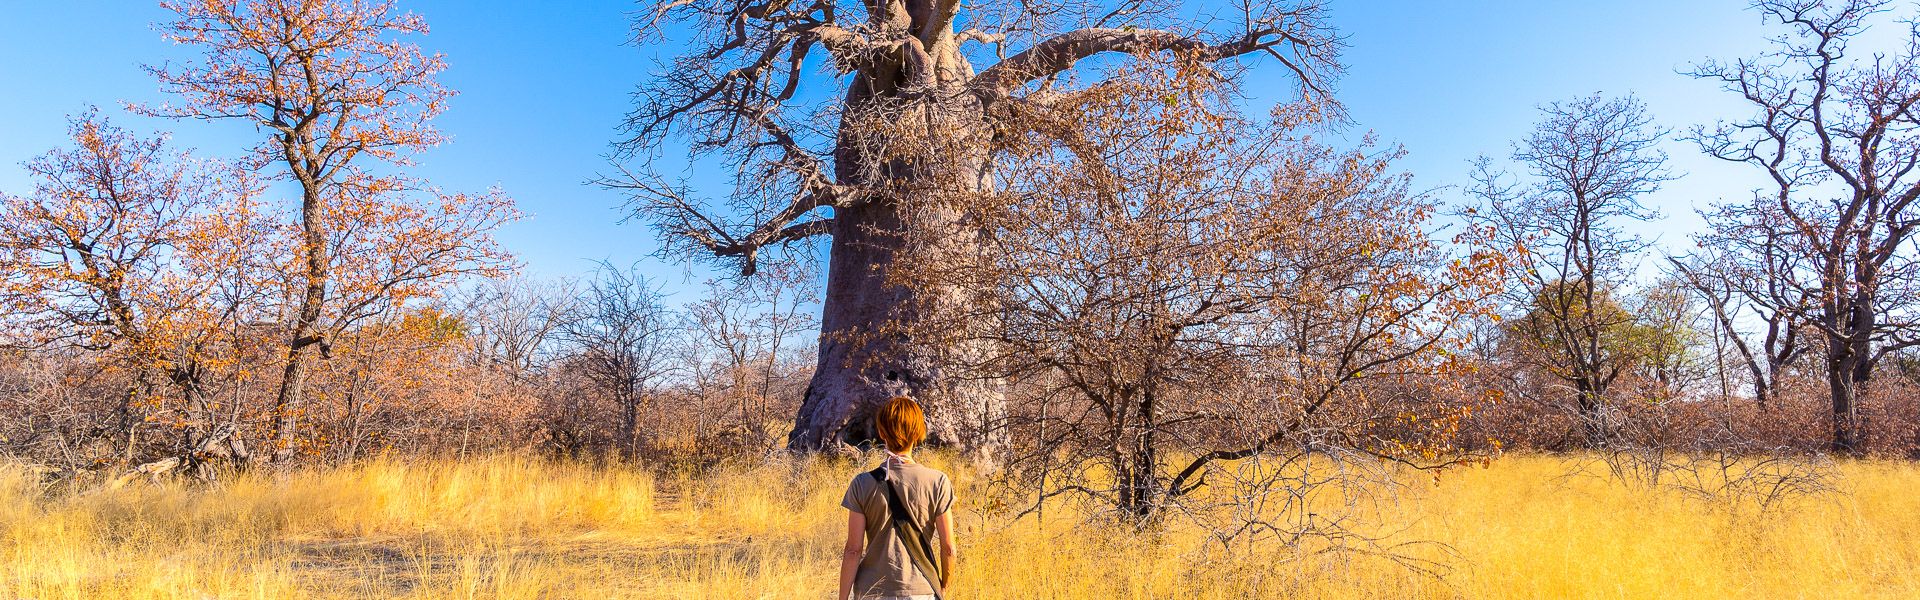 Frau luft in Richtung Baobab durch die Savanne |  Fabio Lamanna, iStockphoto.com / Chamleon